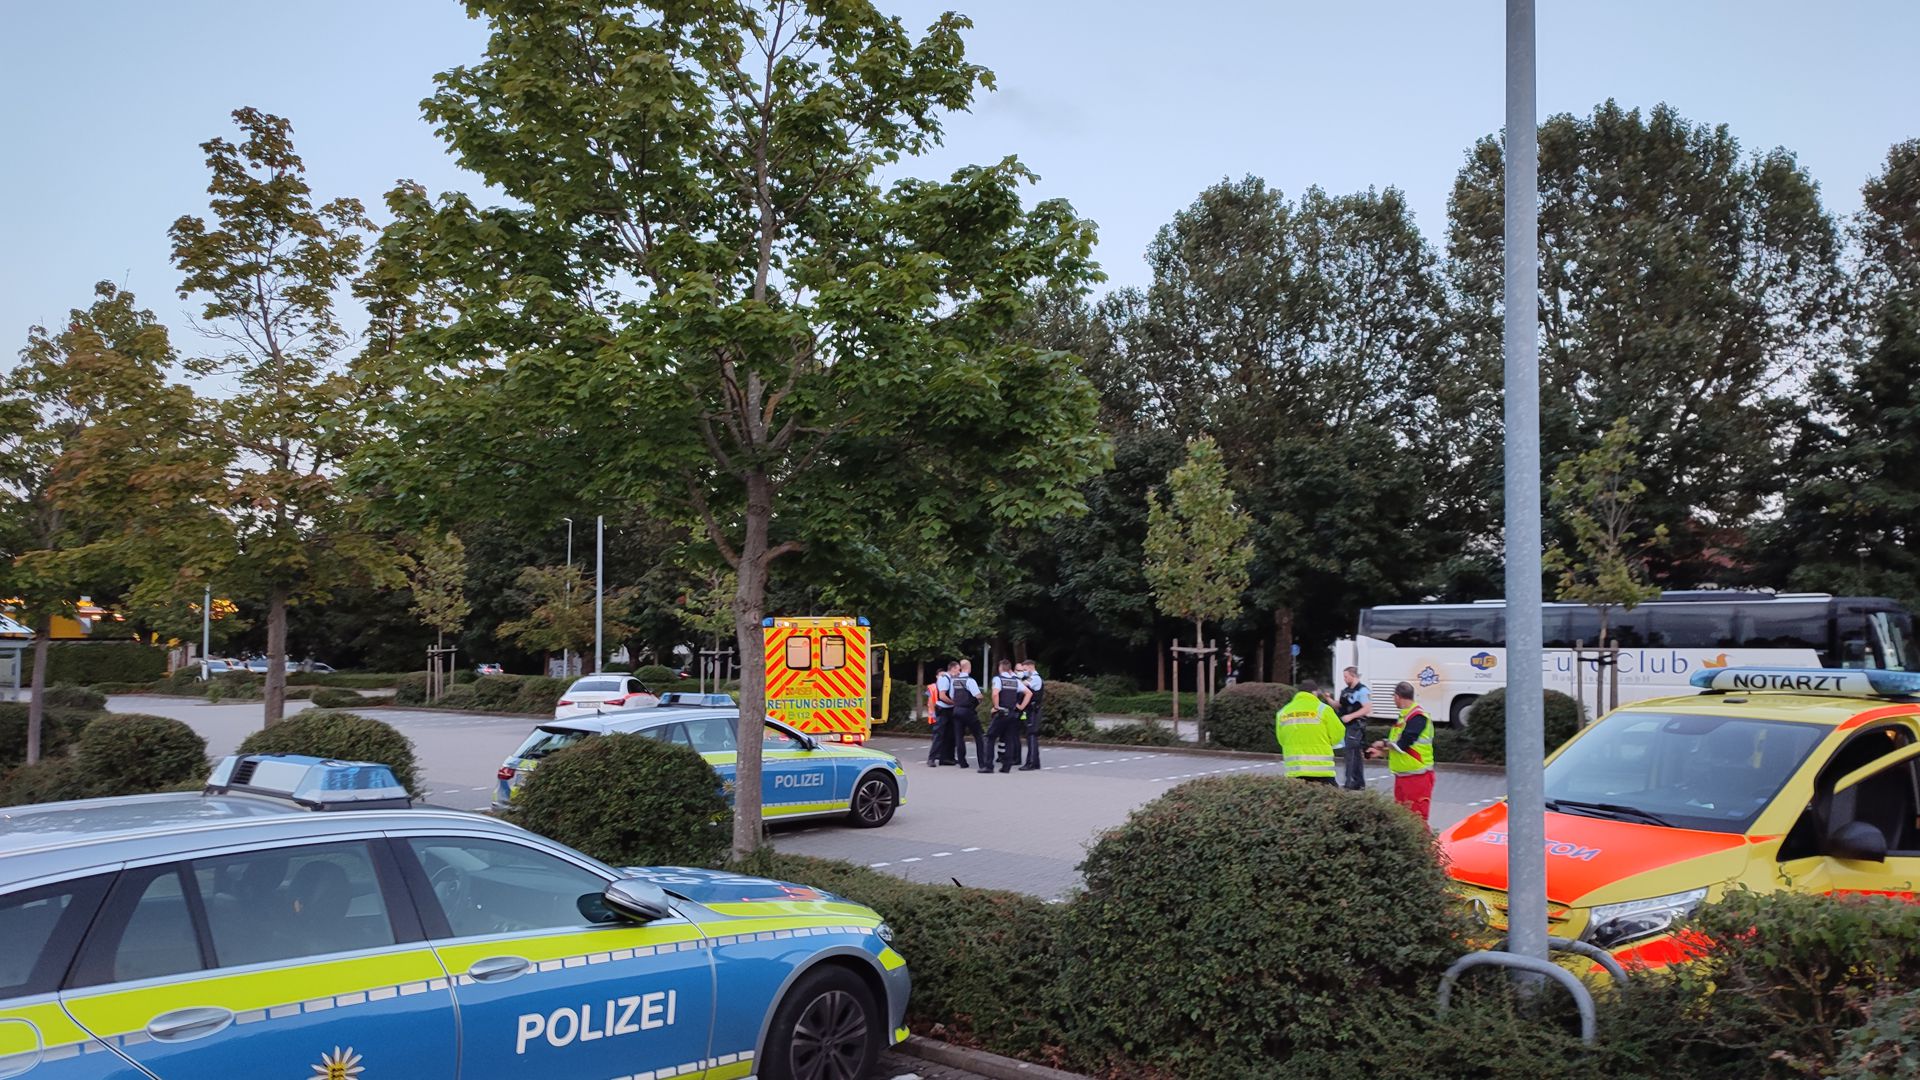 Auf einem Parkplatz befinden sich zwei Rettungswagen, zwei Polizeiautos und eine Gruppe von Polizisten.